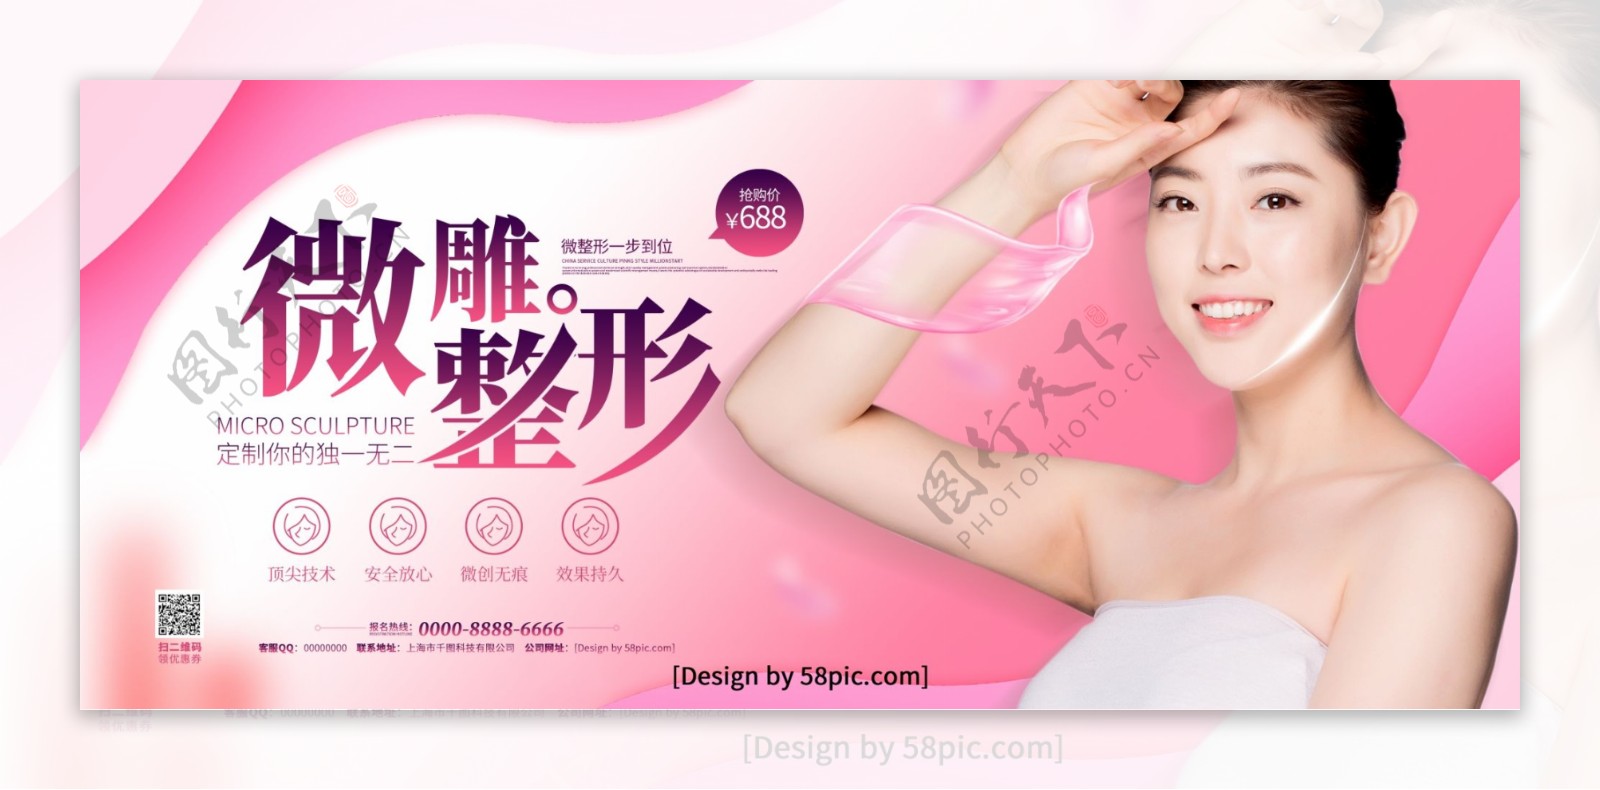 粉色时尚创意字体微雕整形整容宣传展板